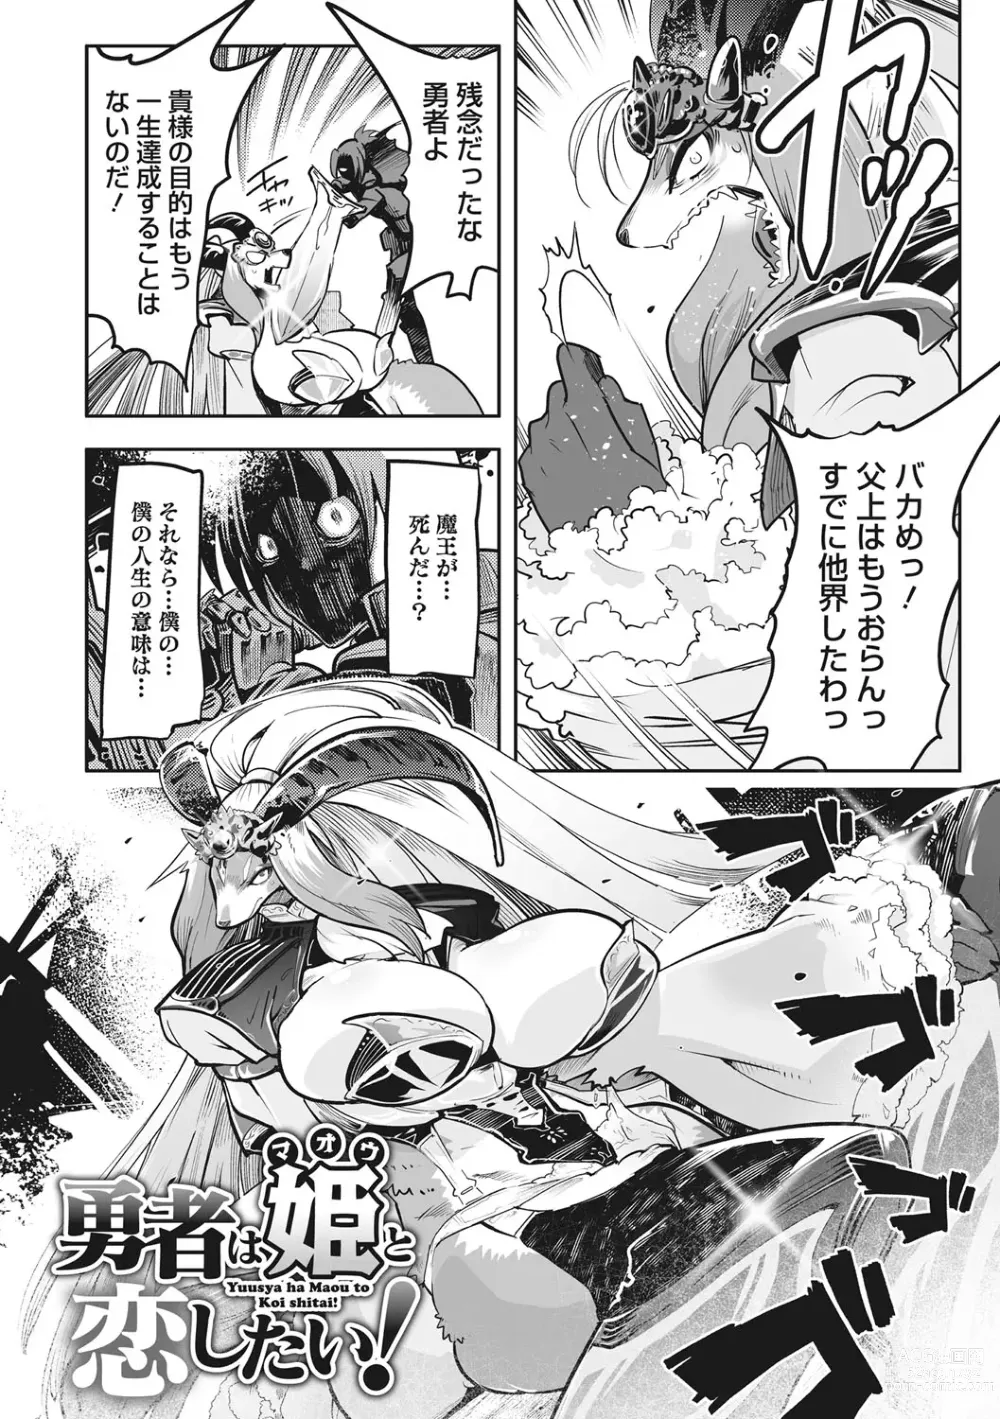 Page 5 of manga Kemono to Koishite Nani ga Warui!